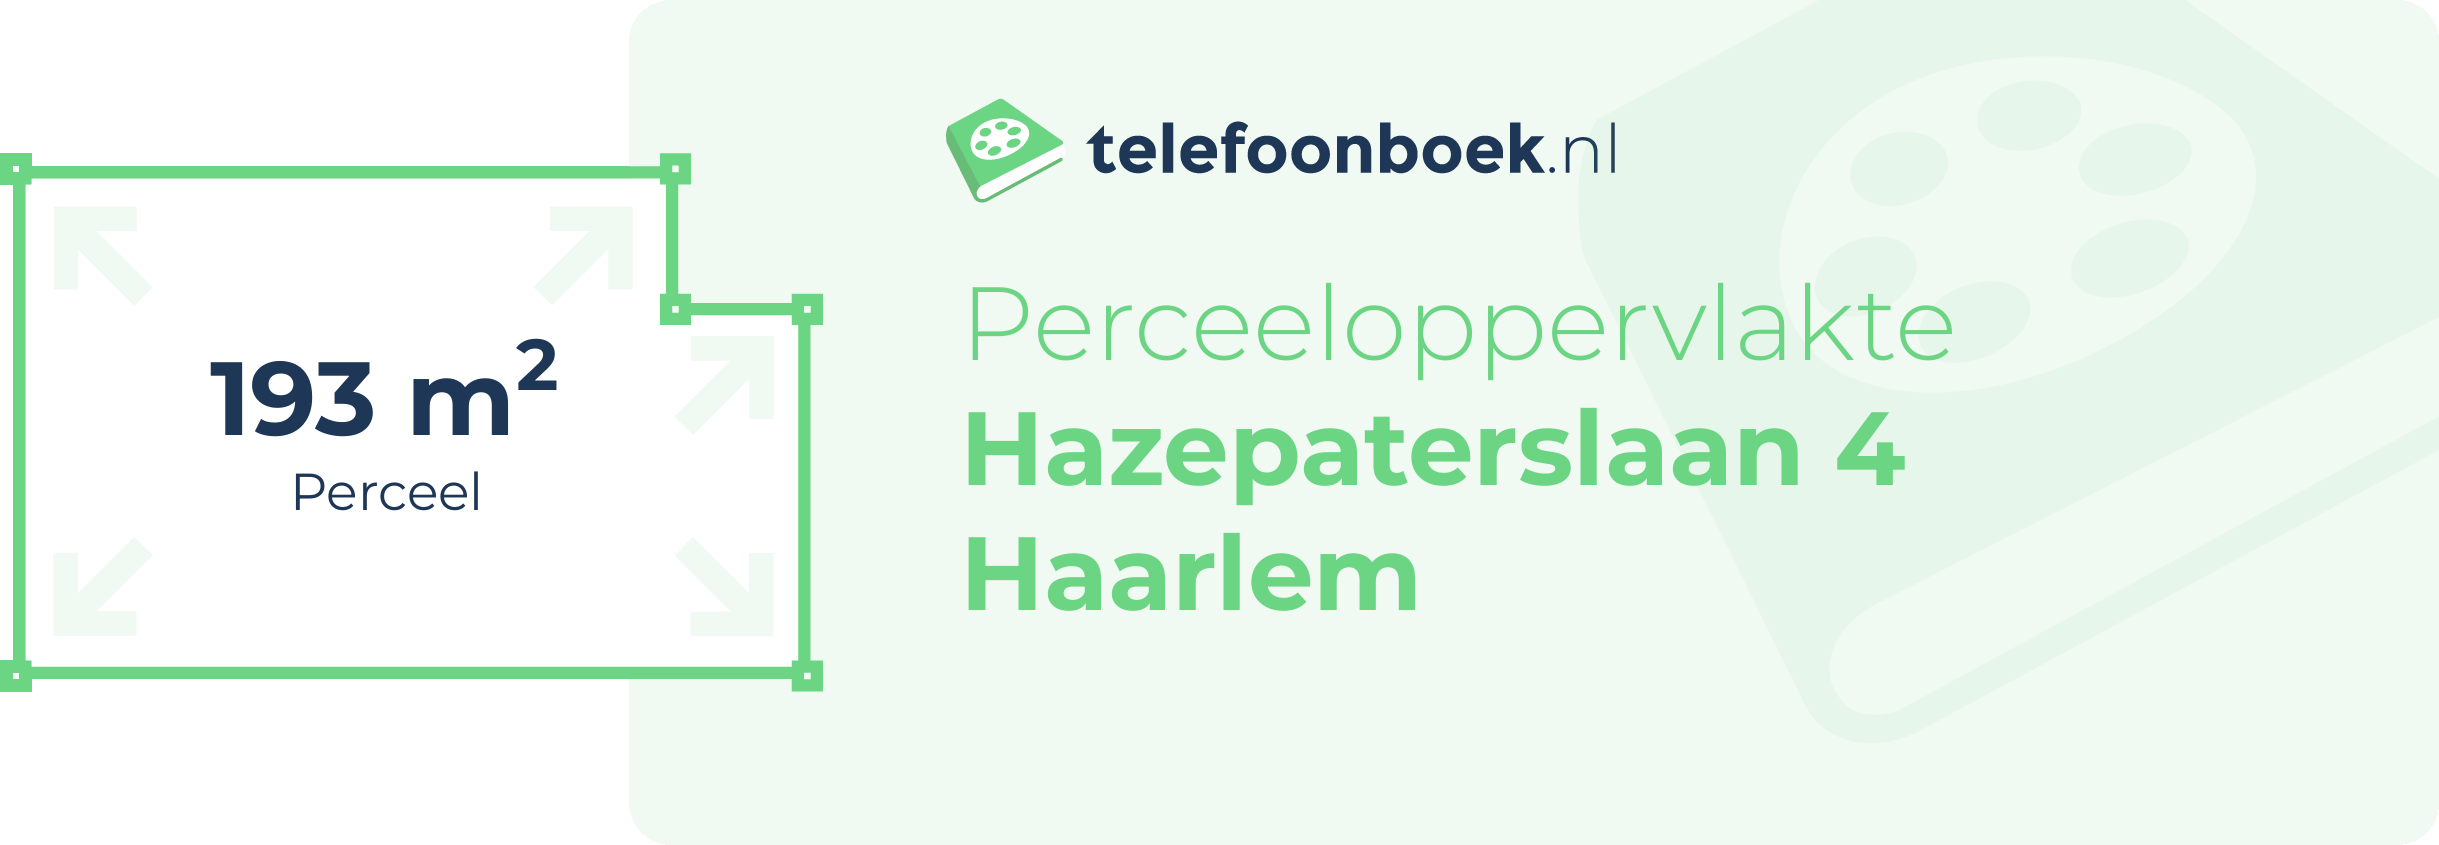 Perceeloppervlakte Hazepaterslaan 4 Haarlem